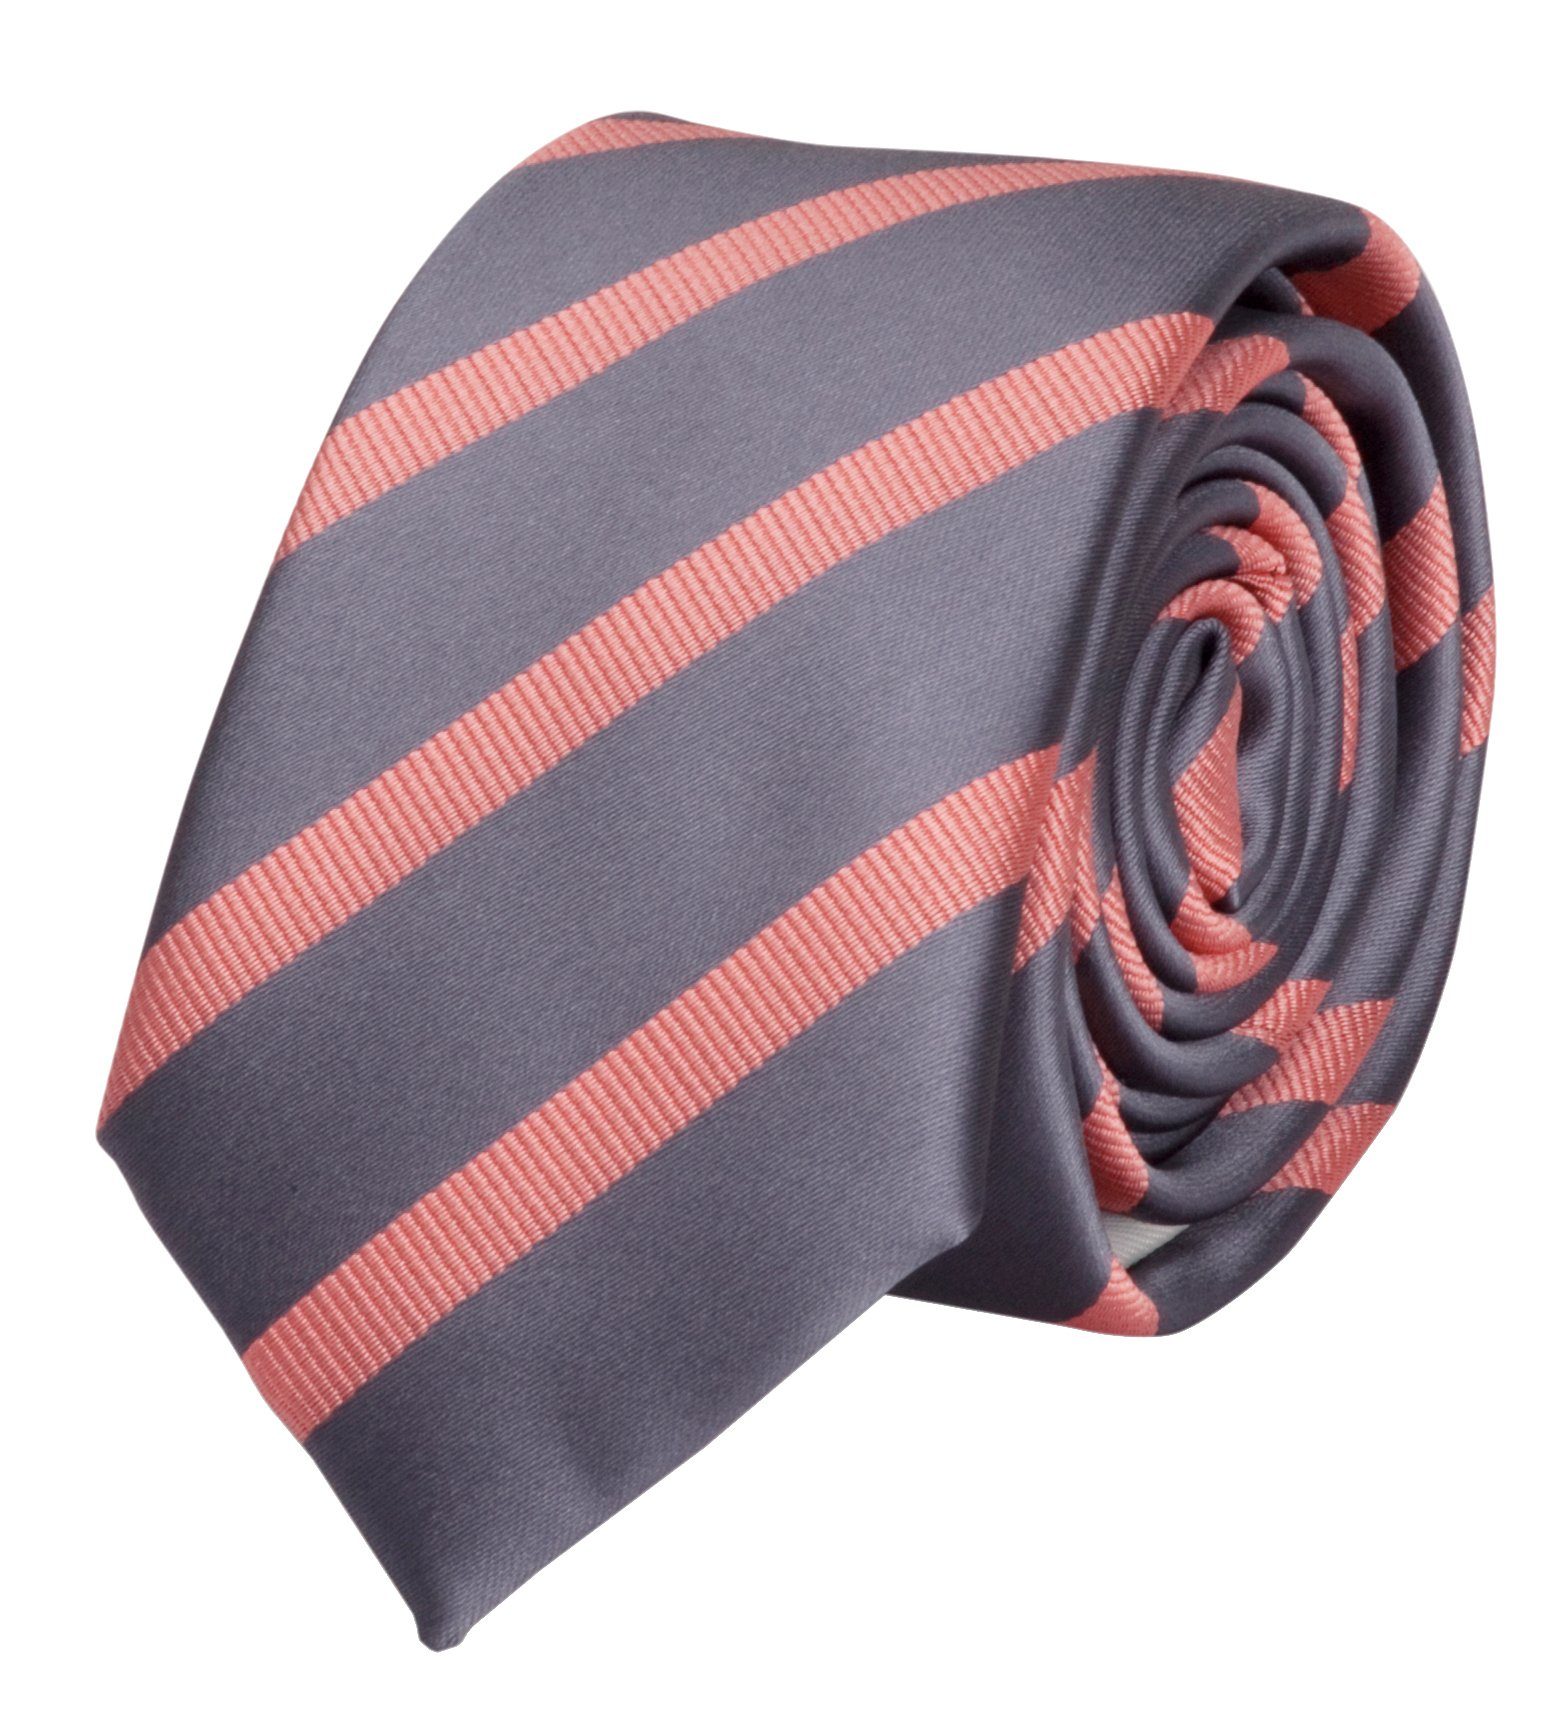 Fabio Farini Krawatte gestreifte Herren Krawatte - Tie mit Streifen in 6cm oder 8cm Breite (ohne Box, Gestreift) Schmal (6cm), Grau/Lachs